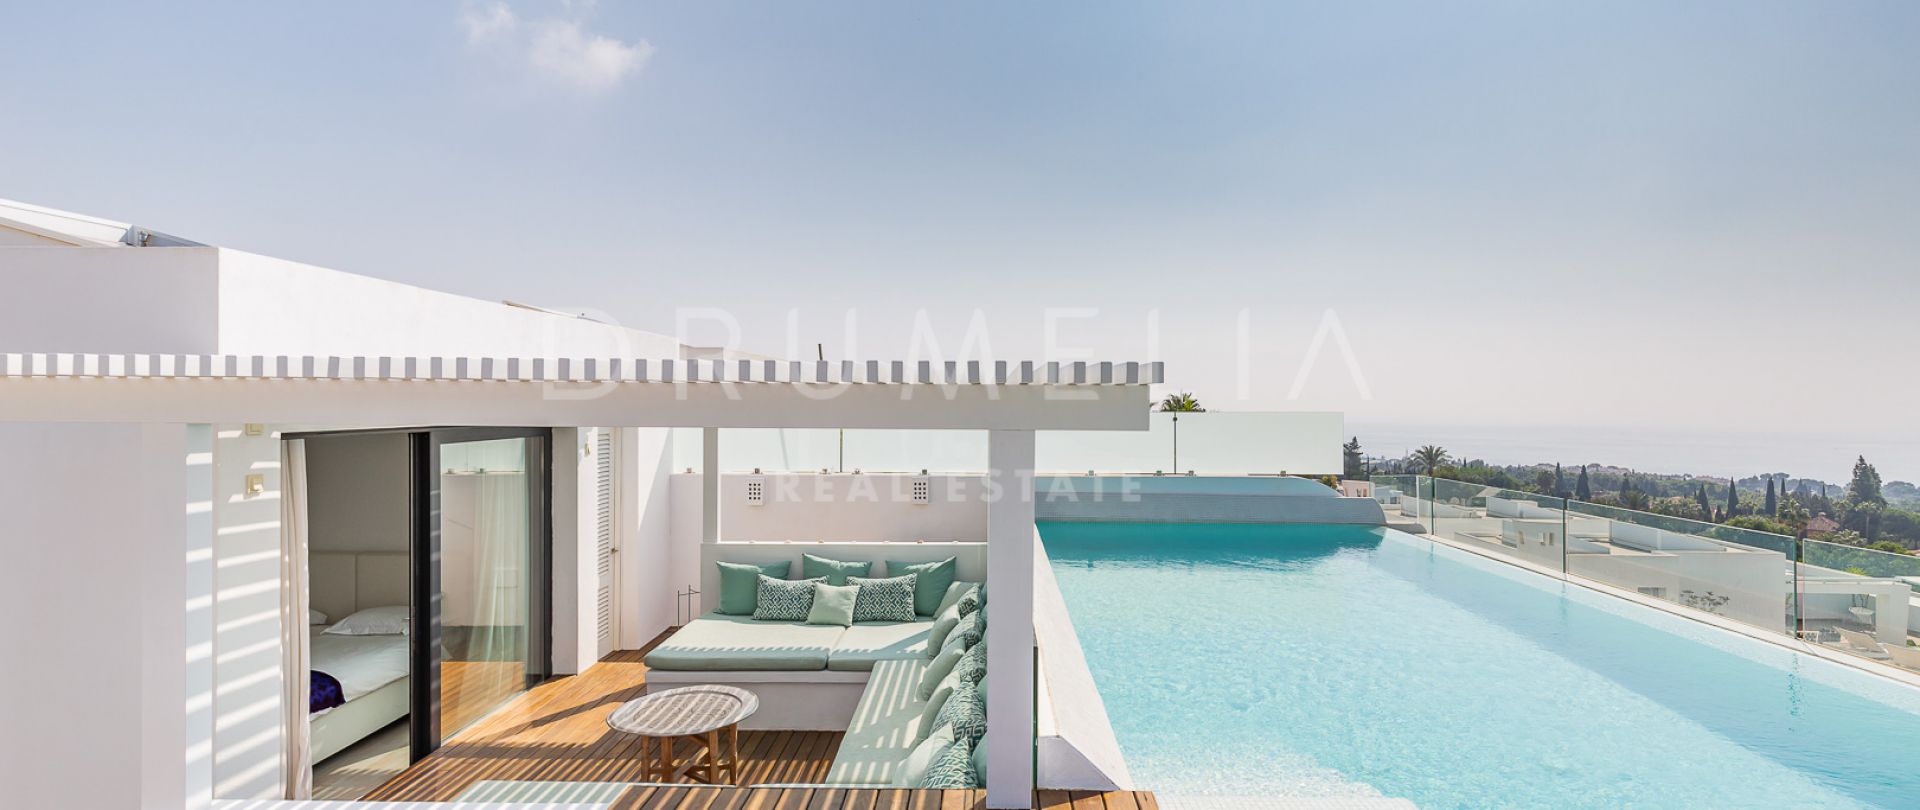 Ausgezeichnetes modernes Luxus-Penthouse auf 2 Ebenen, La Reserva de Sierra Blanca, Marbella